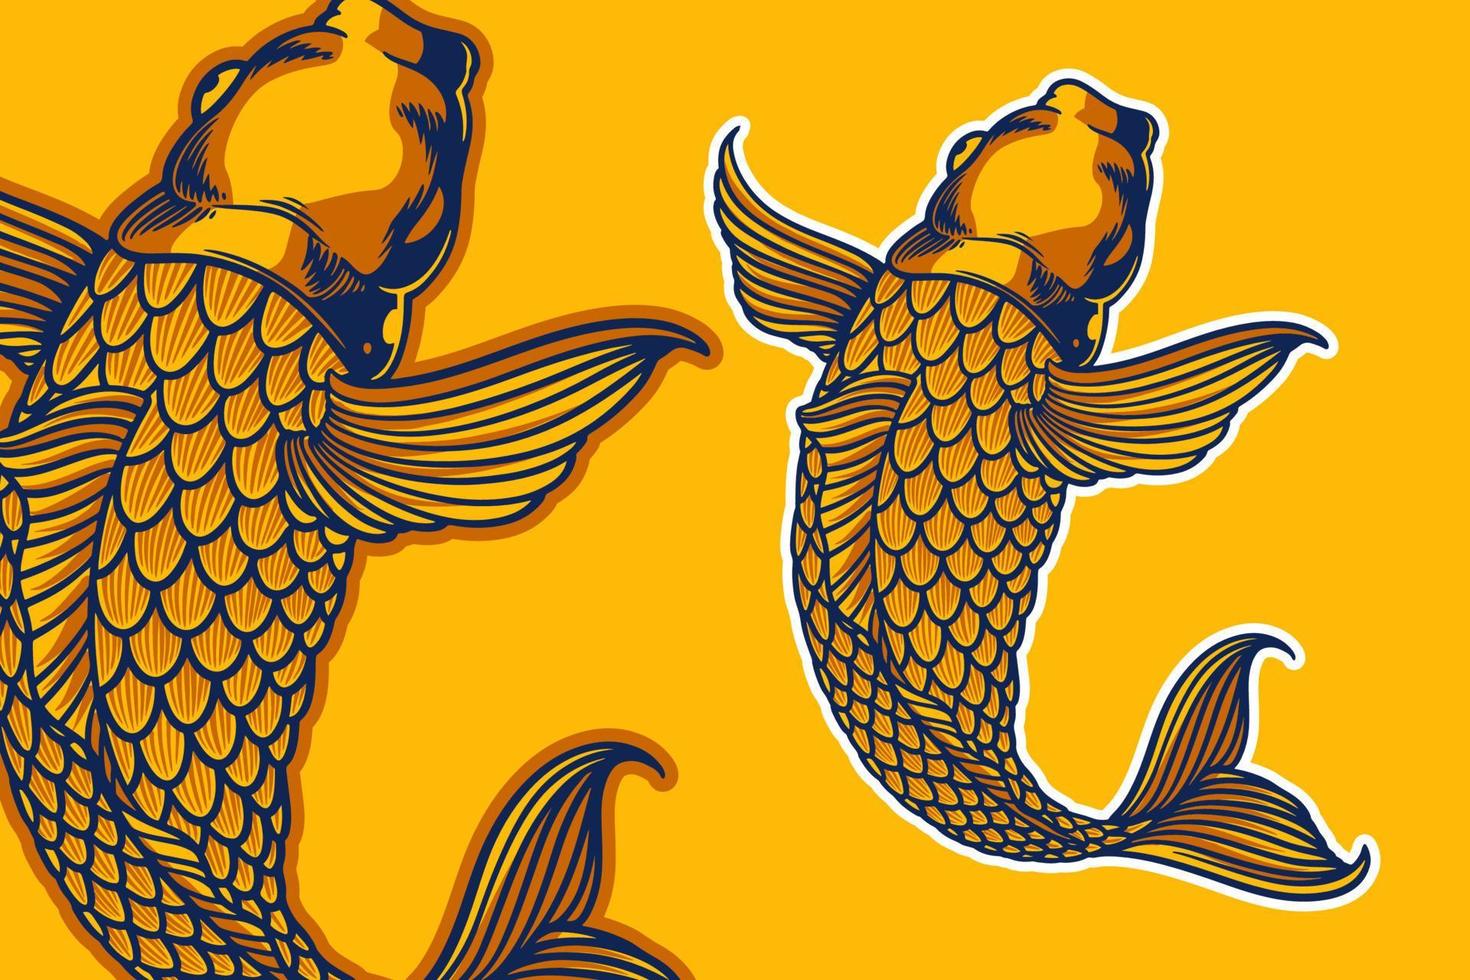 golden koi fish vector illustration cartoon style